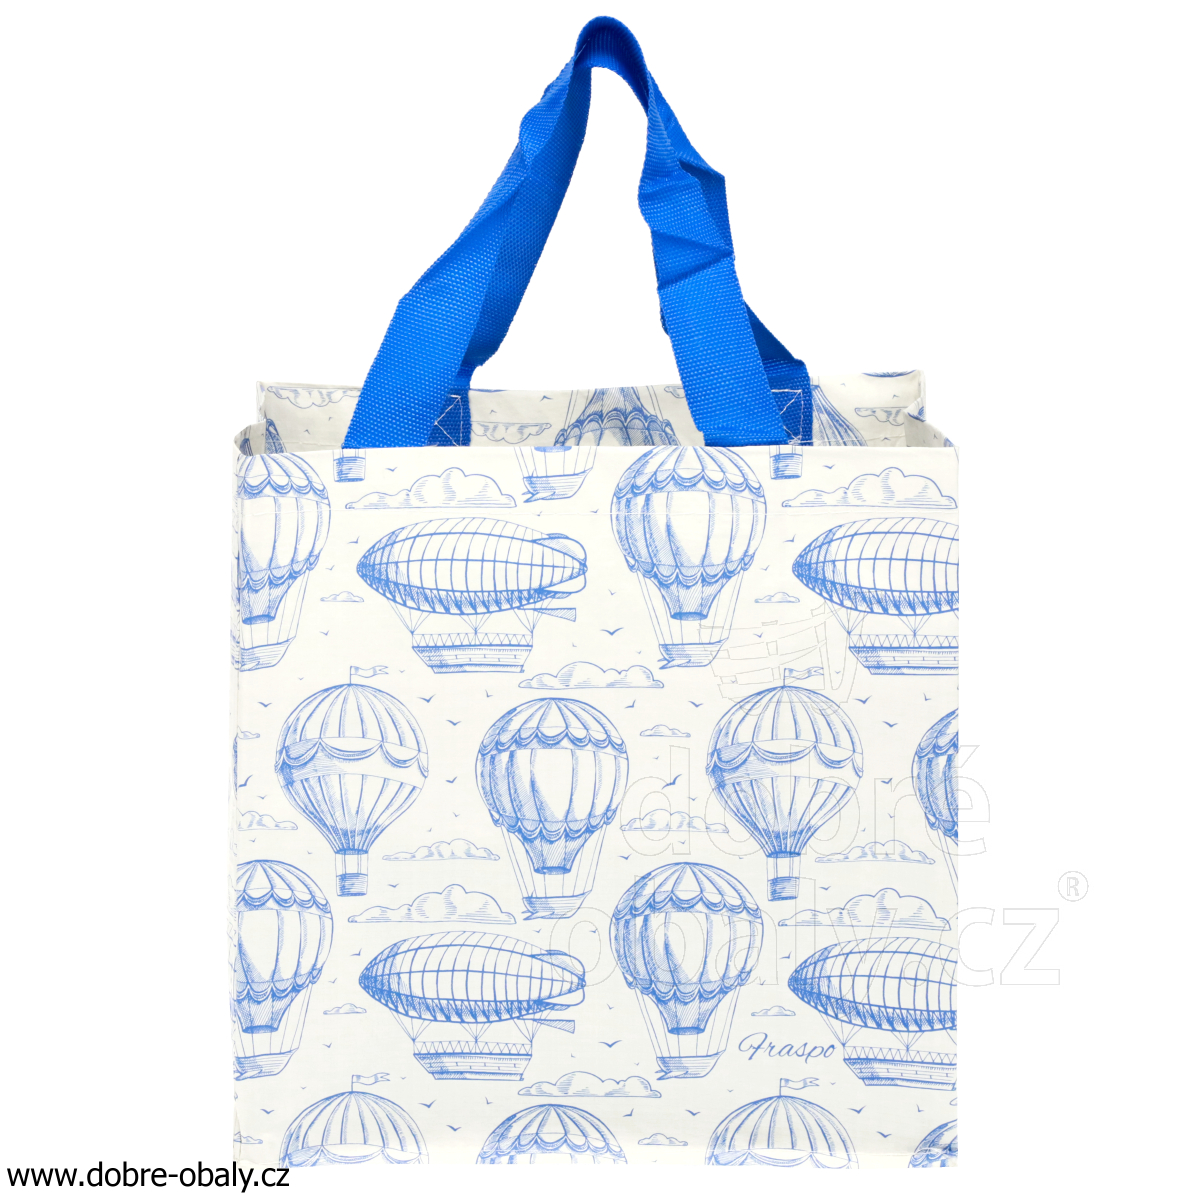 Ekologická taška MINI bílá s modrými balóny, výhodné balení 